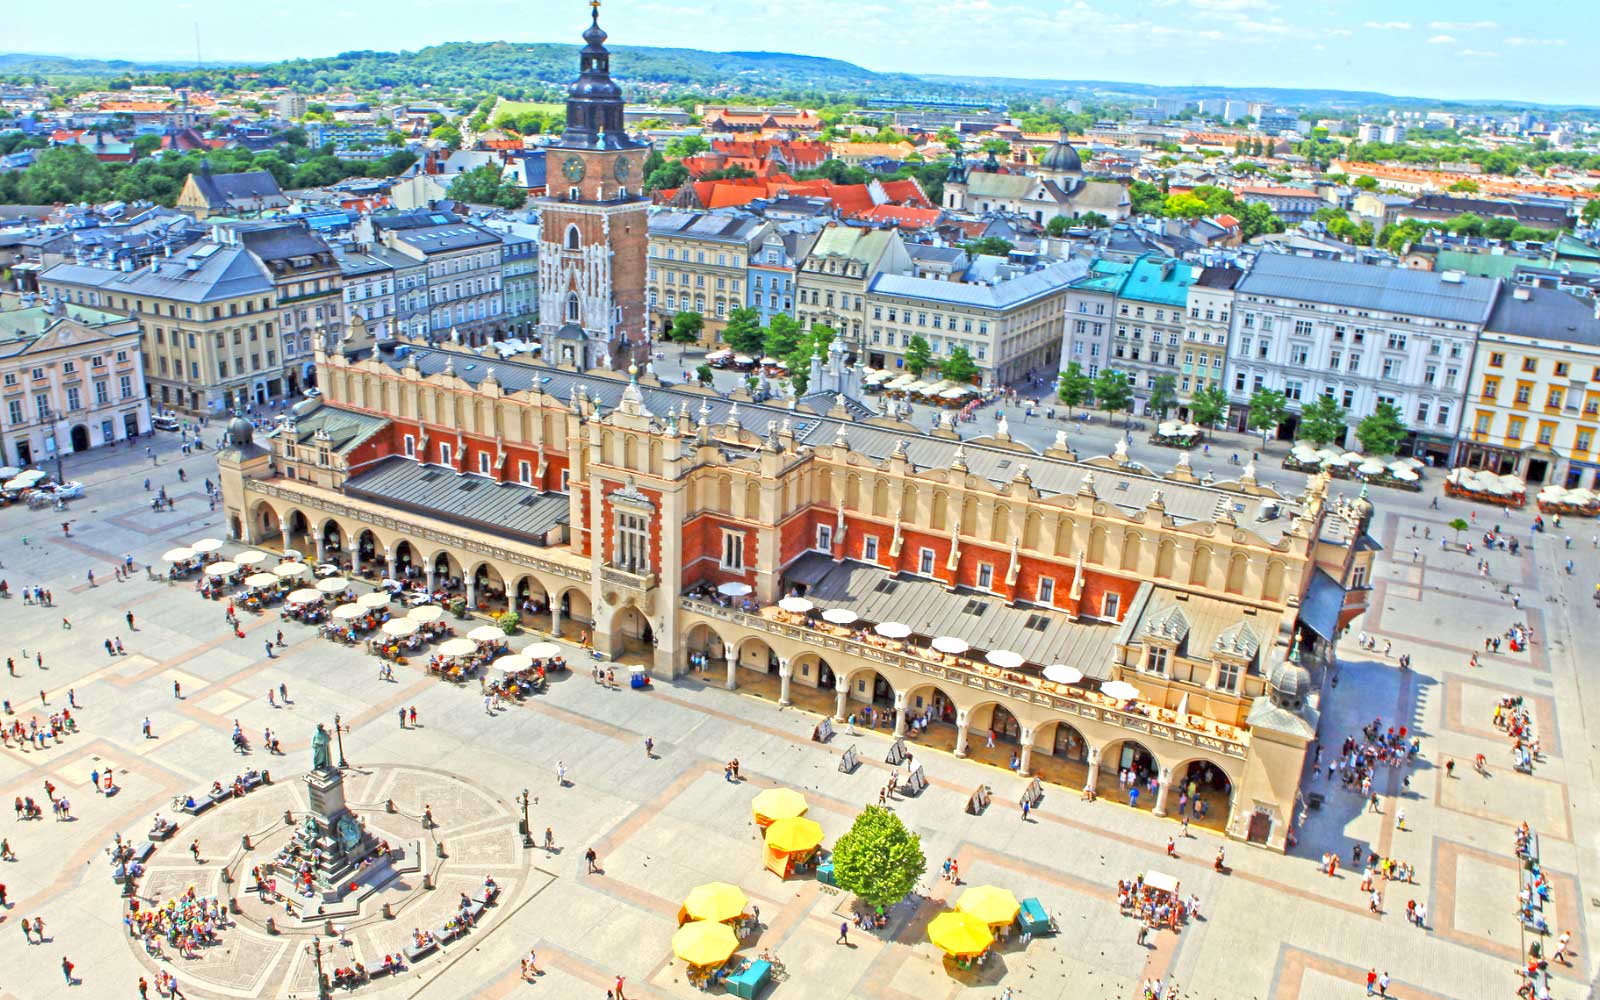 Krakow City View